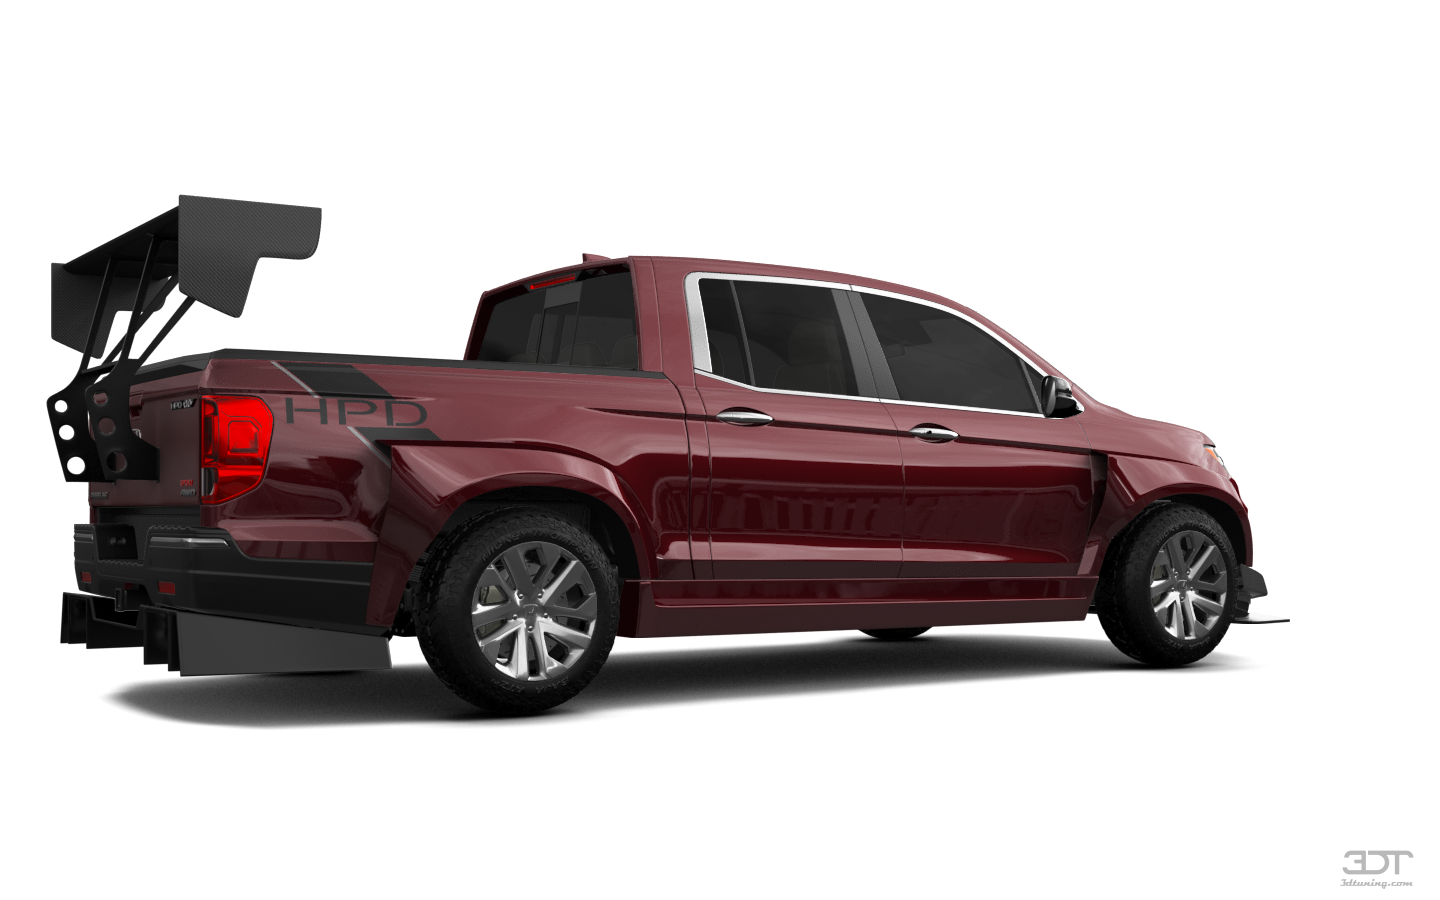 Honda Ridgeline 4 Door pickup truck 2021 tuning